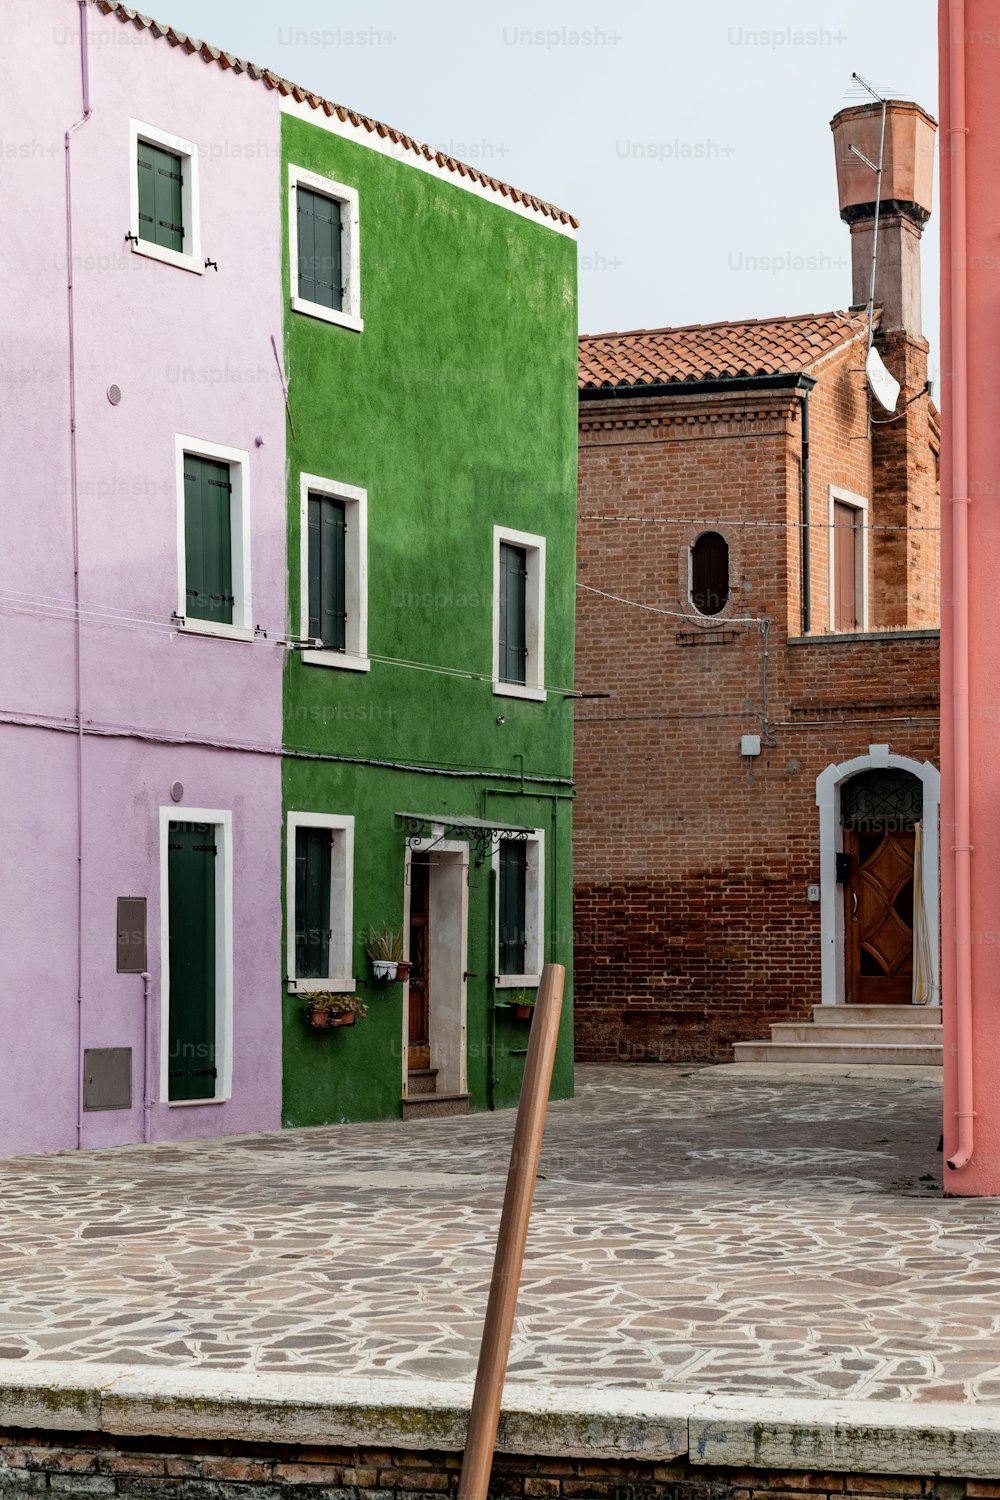 Una hilera de edificios coloridos uno al lado del otro